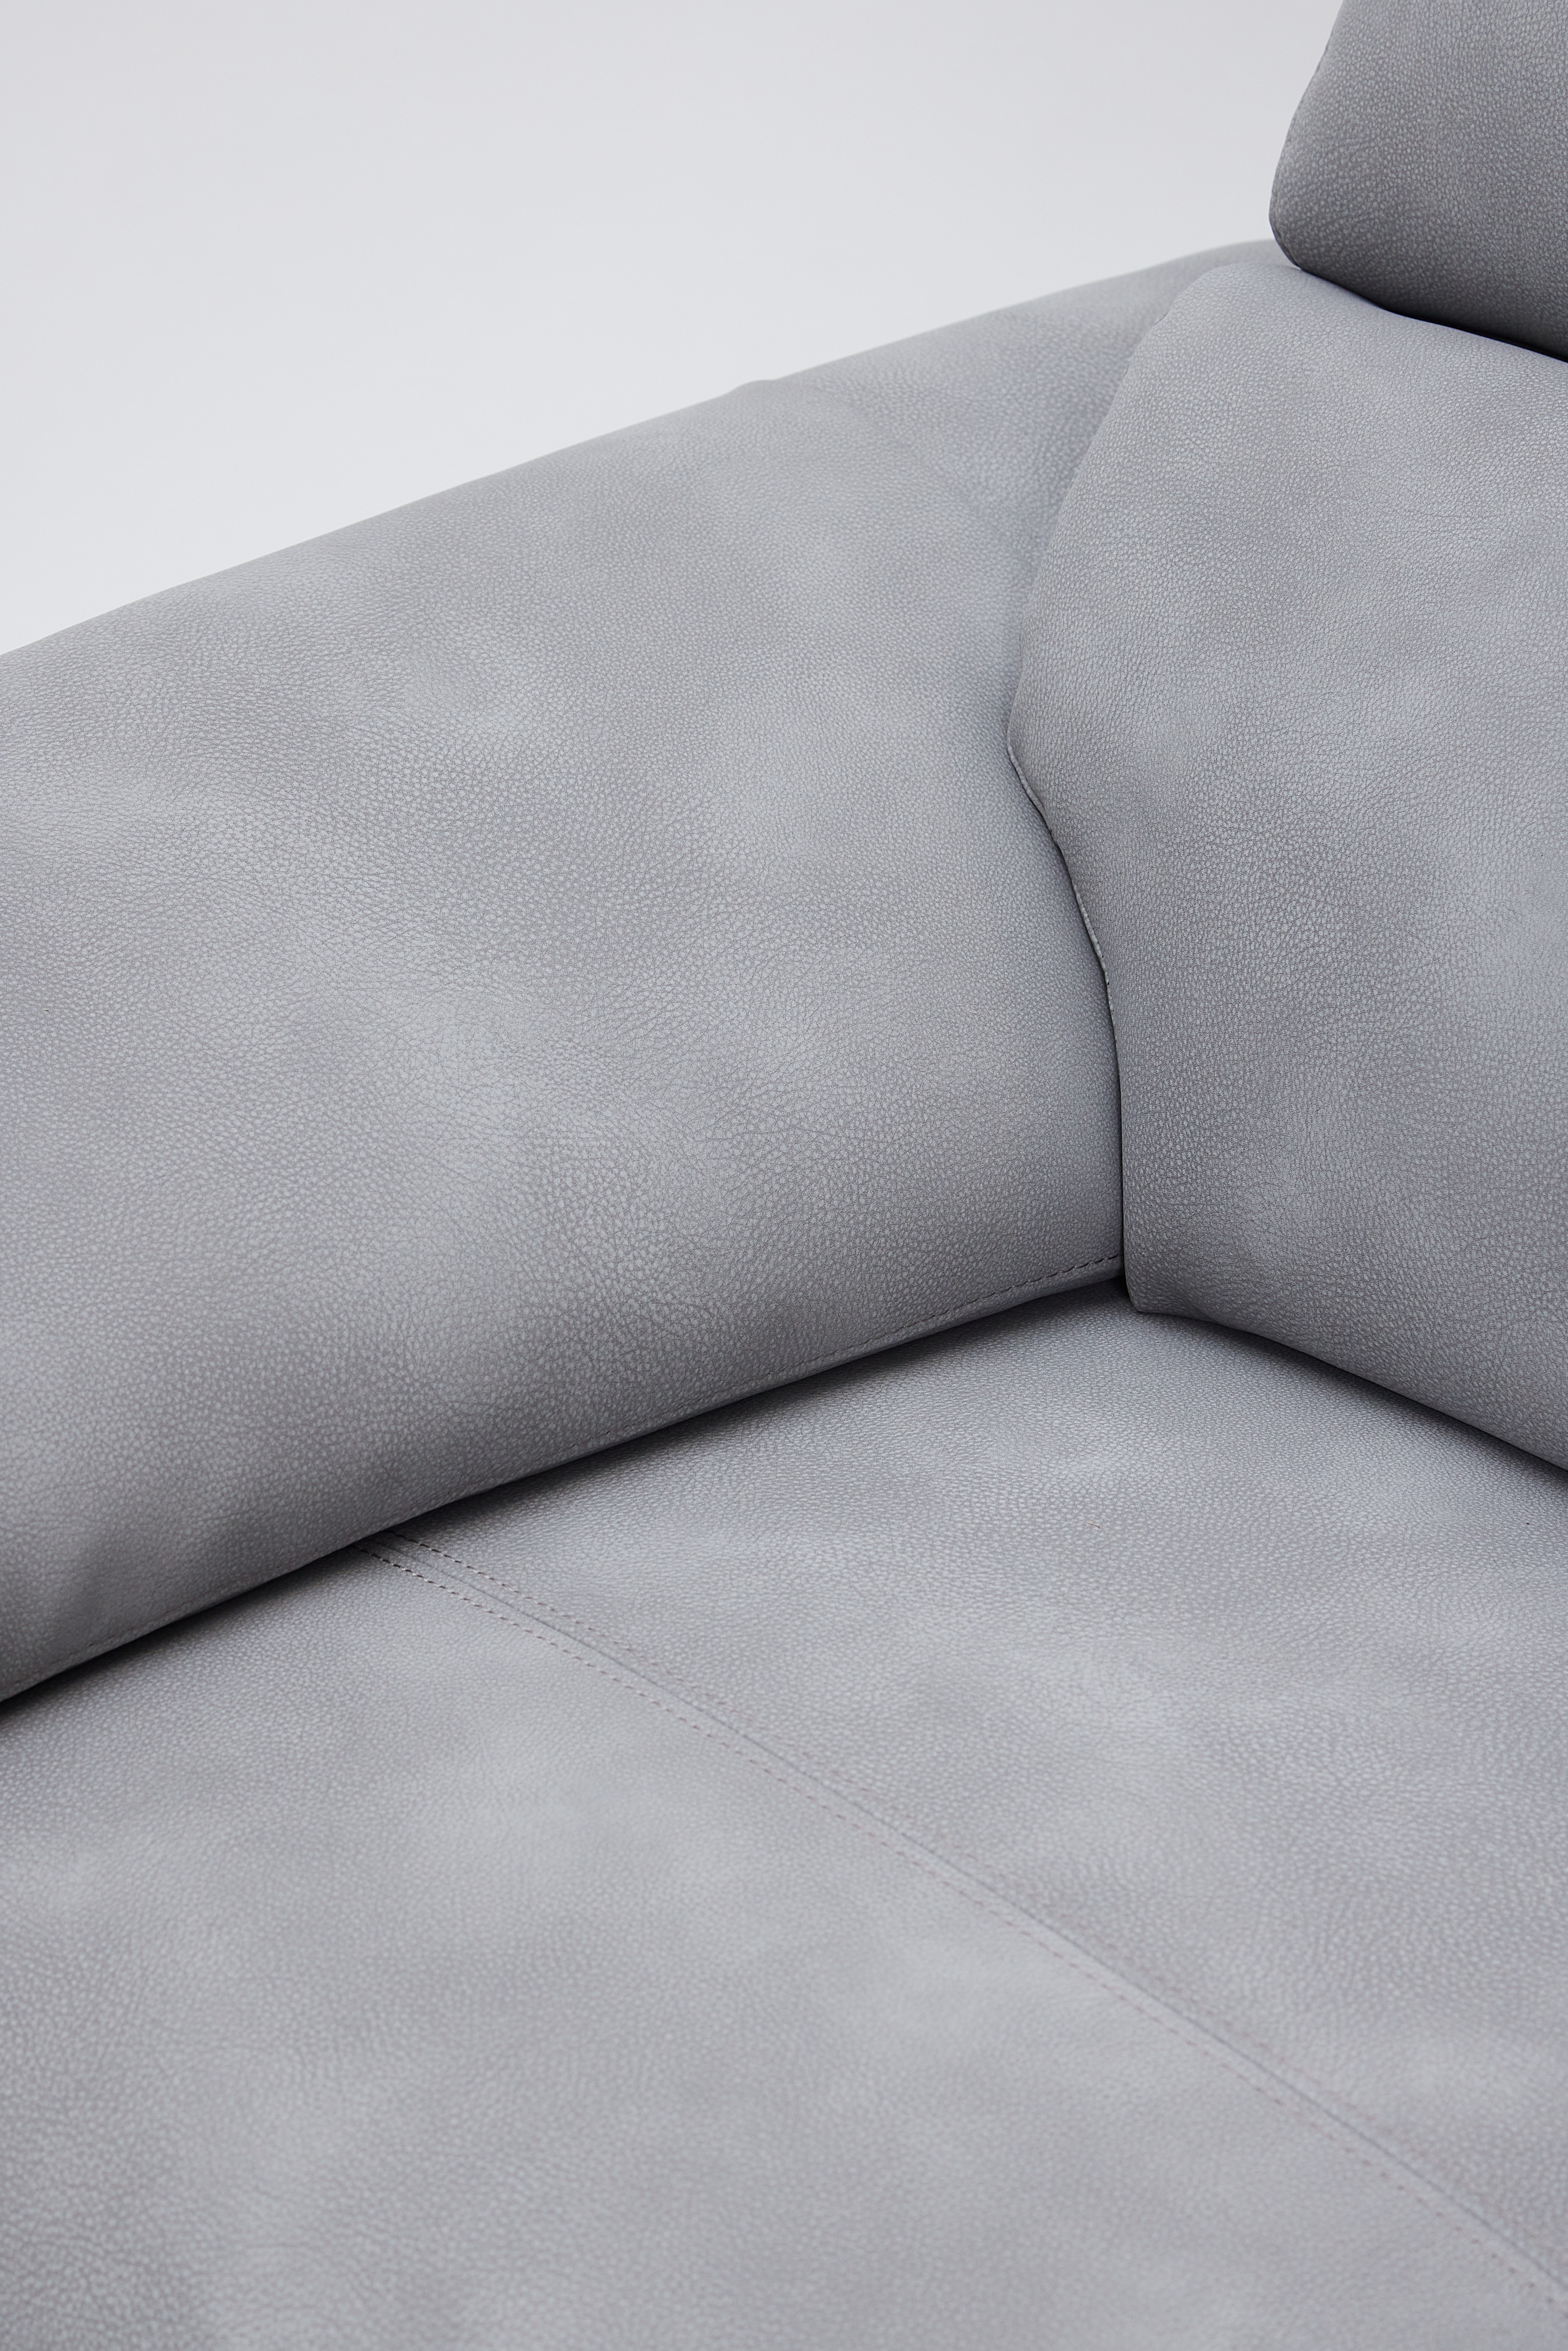 Montero 2 Seater Sofa - Grey